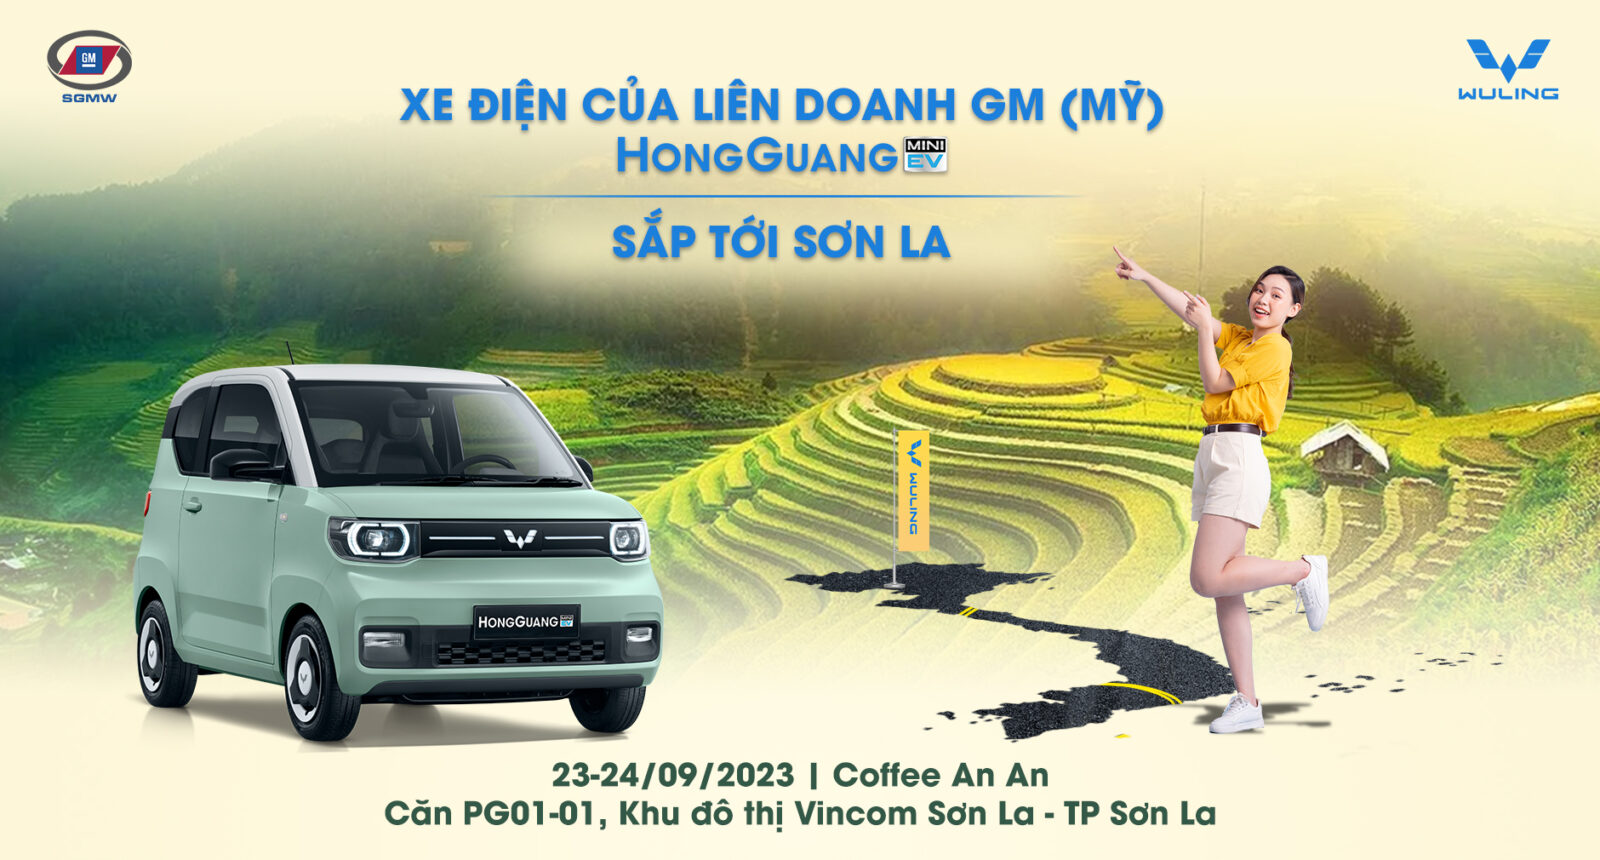 Sơn La ơi, xe điện của liên doanh GM (Mỹ) – HongGuang MiniEV sắp tới rồi!